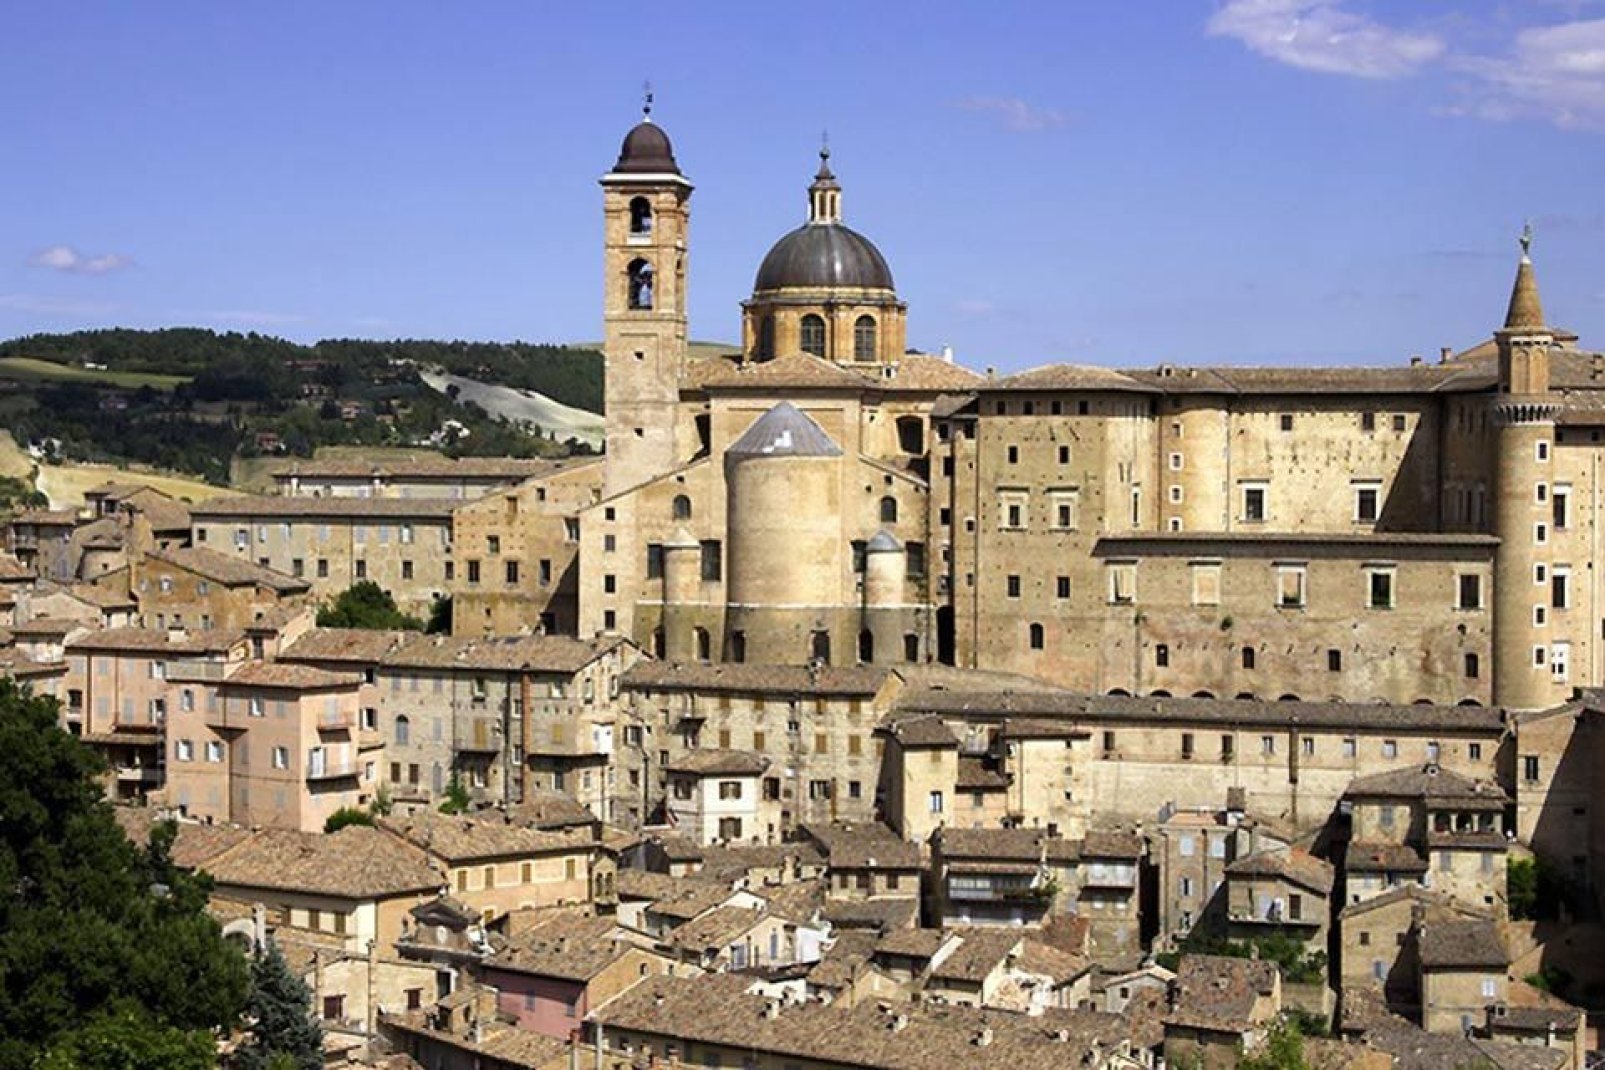 Urbino deve molte delle sue bellezze artistiche al mecenatismo della famiglia Montefeltro, che aveva una delle corti nobiliari più raffinate dell'Italia rinascimentale